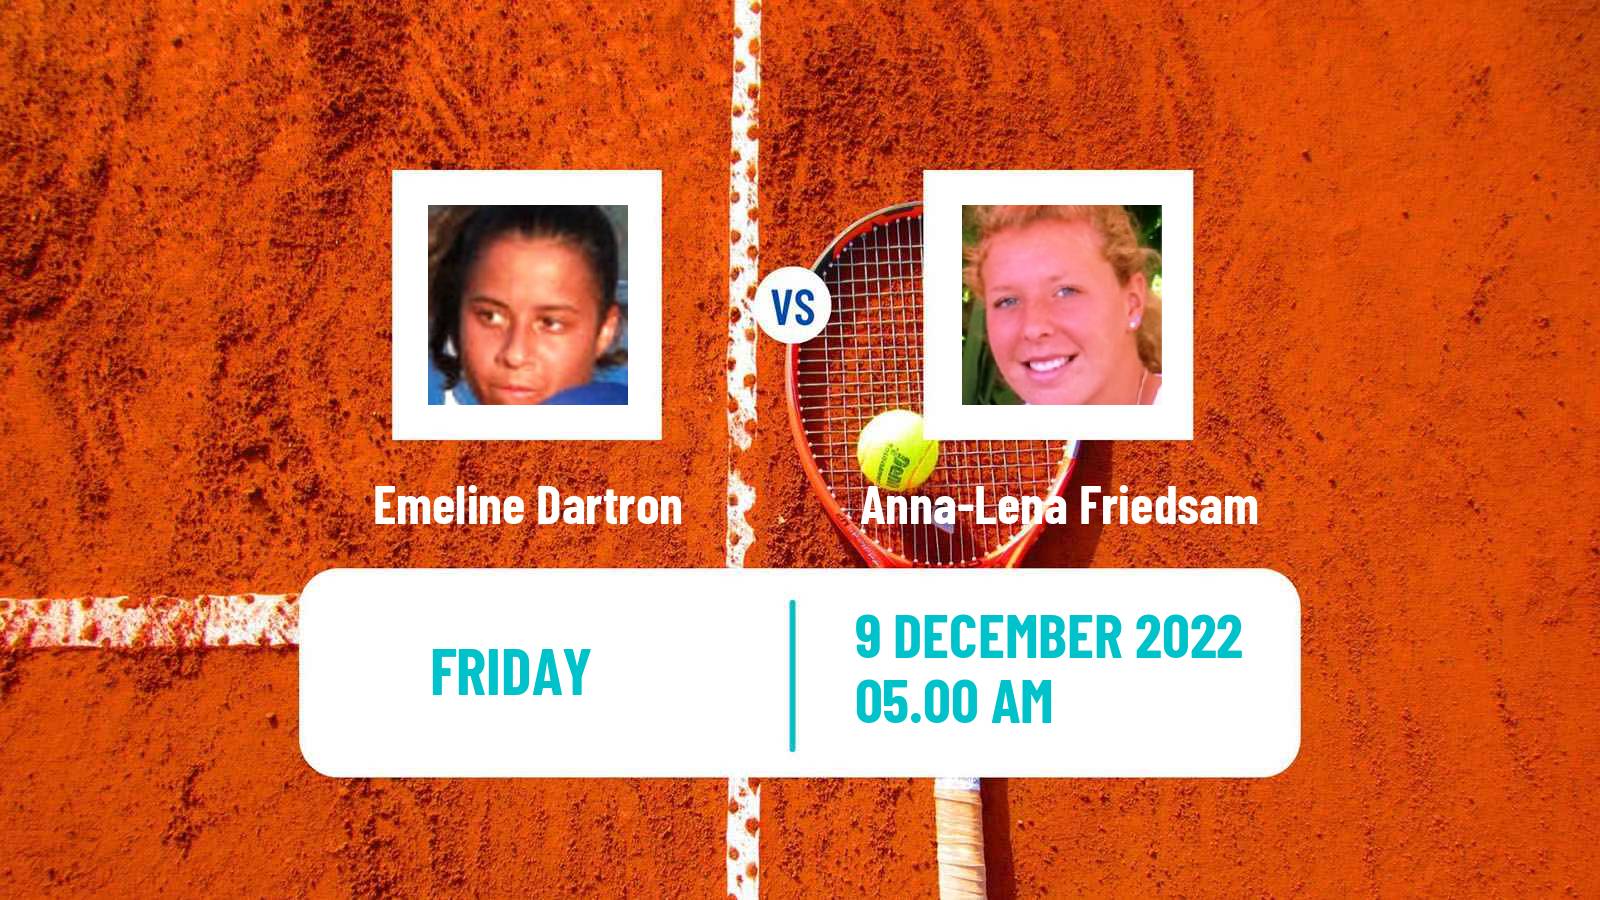 Tennis ATP Challenger Emeline Dartron - Anna-Lena Friedsam